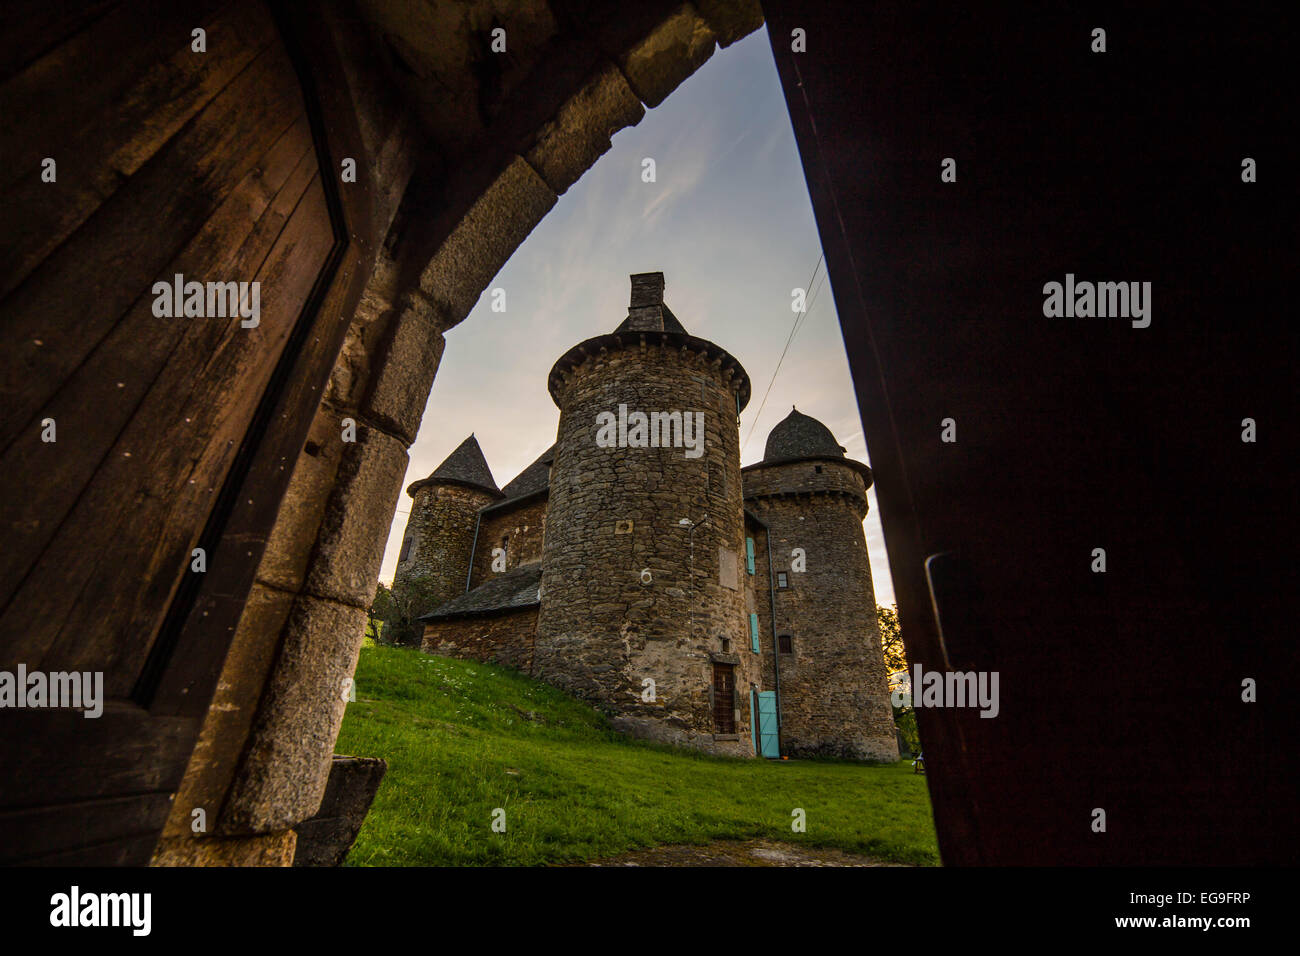 France, Auvergne, Vue du château de derrière la porte ouverte Banque D'Images